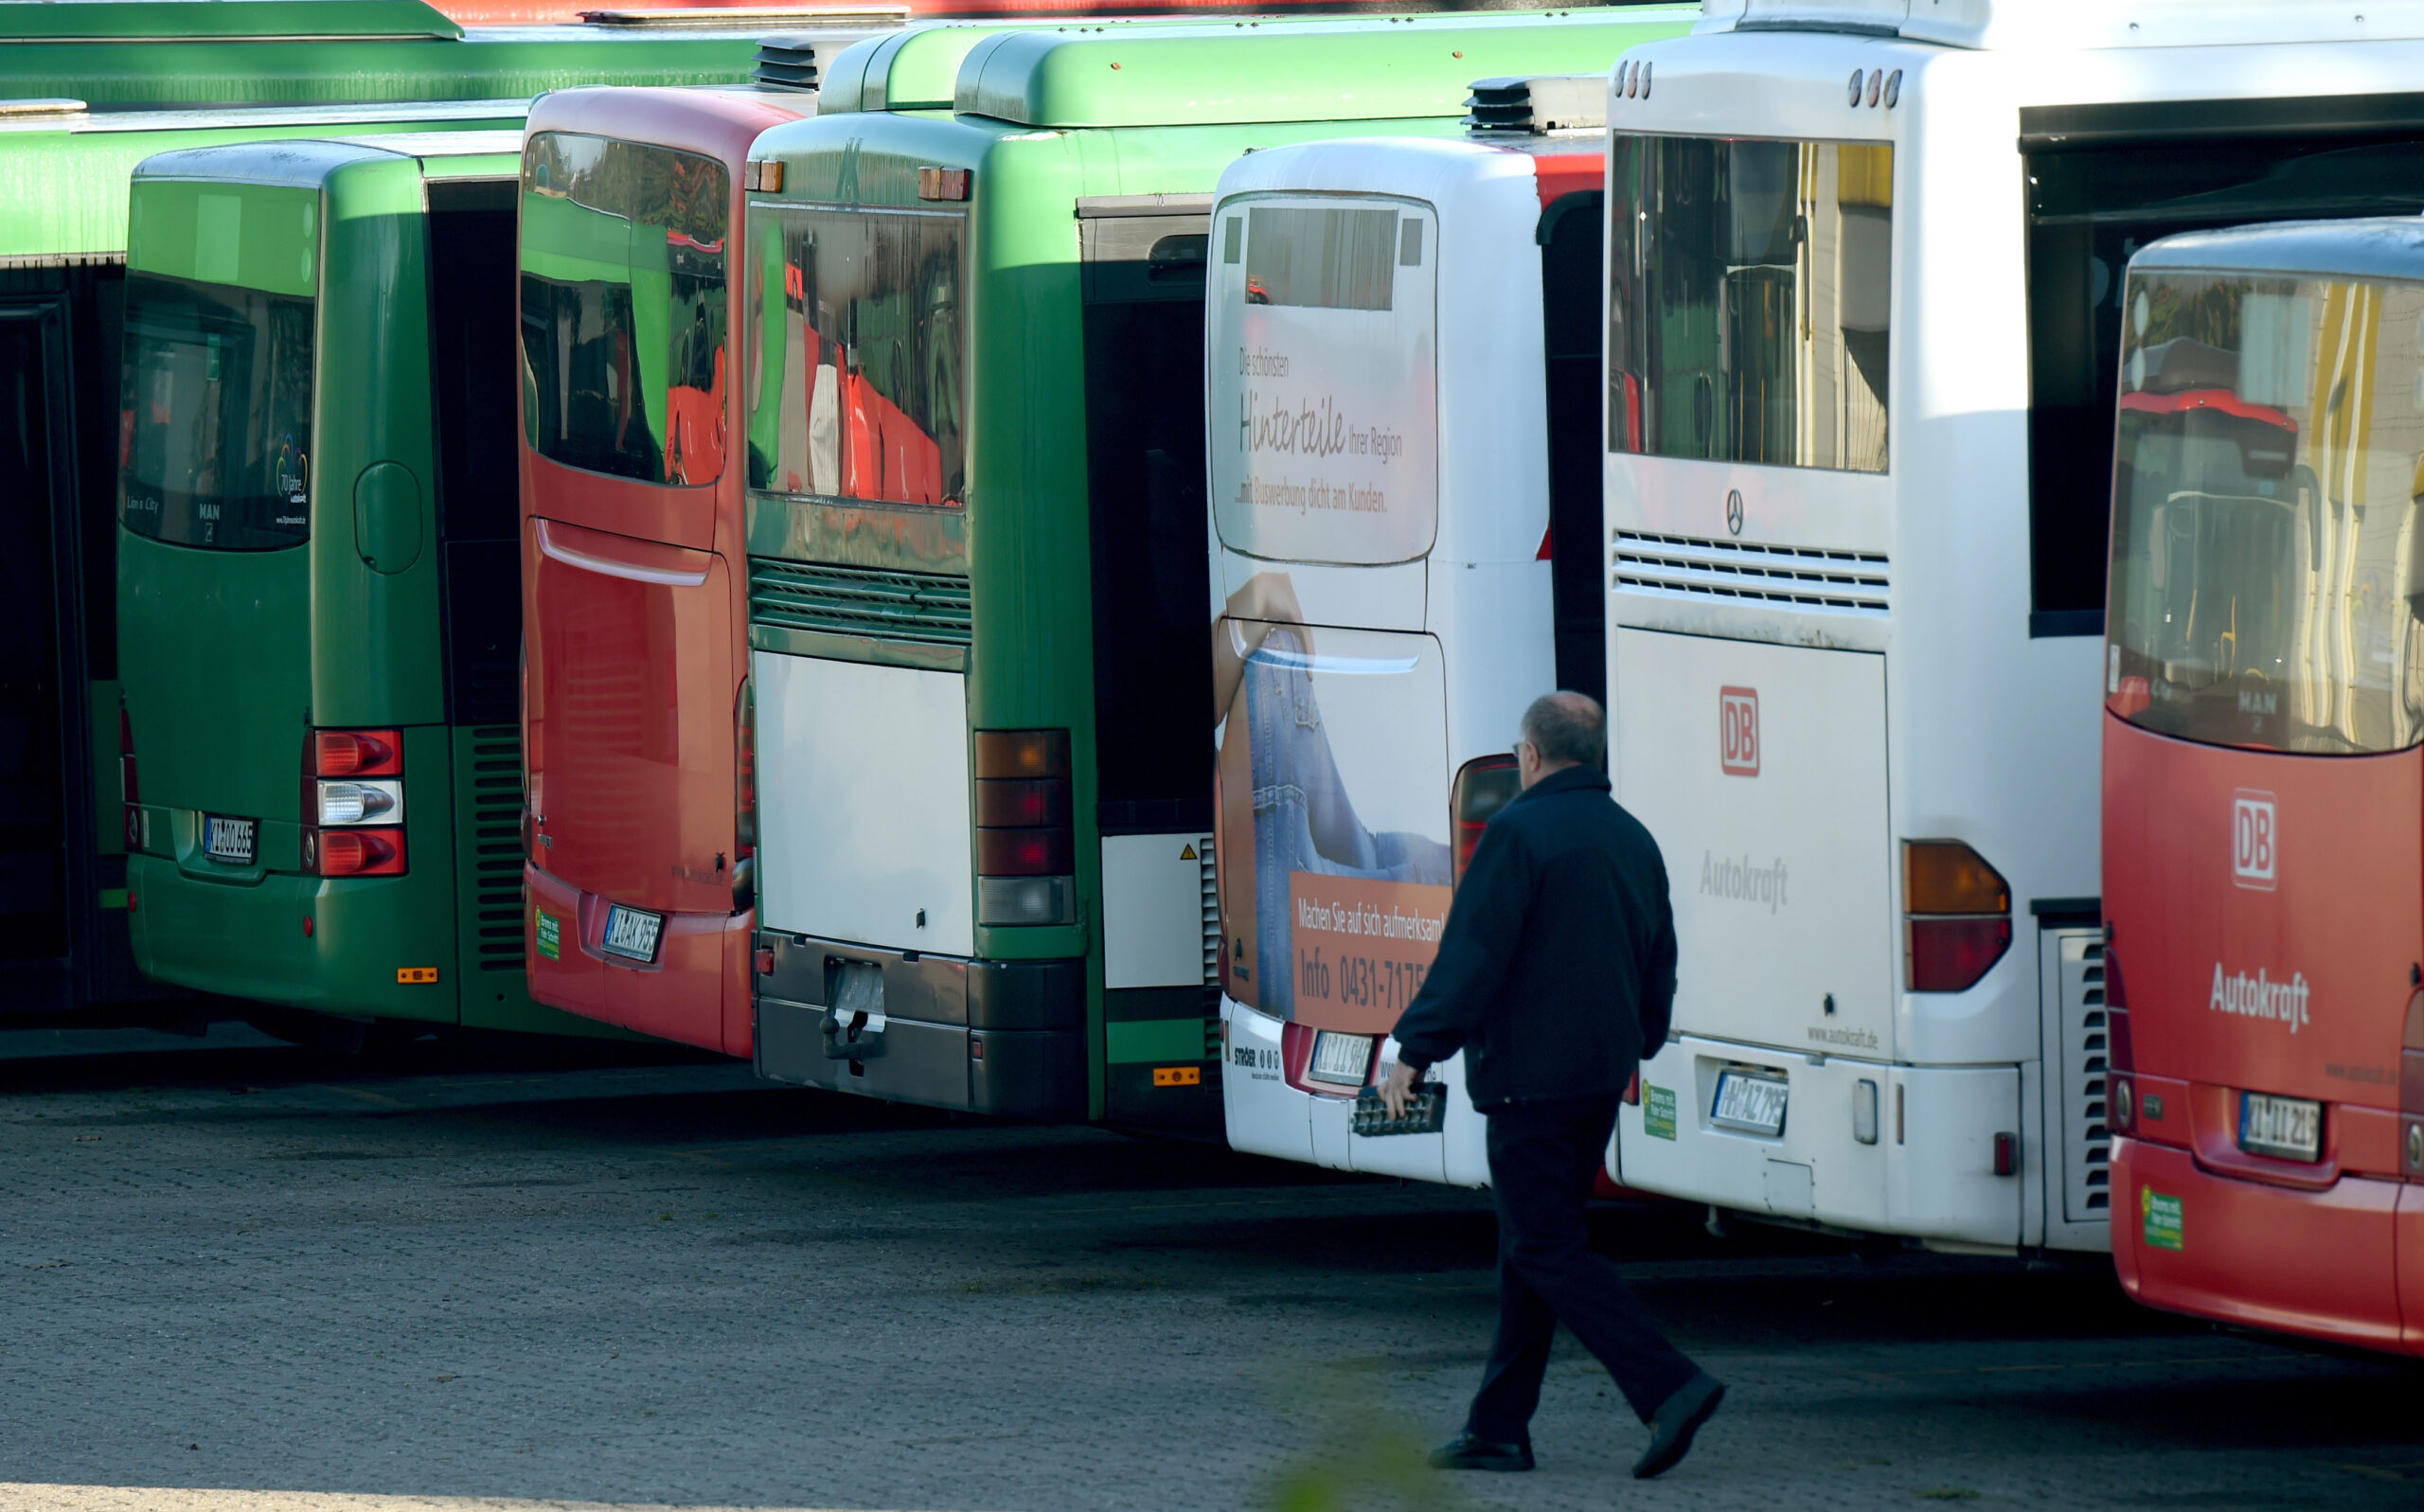 Busse stehen in Kiel-Wellsee (Schleswig-Holstein) im Depot der Firma Autokraft.